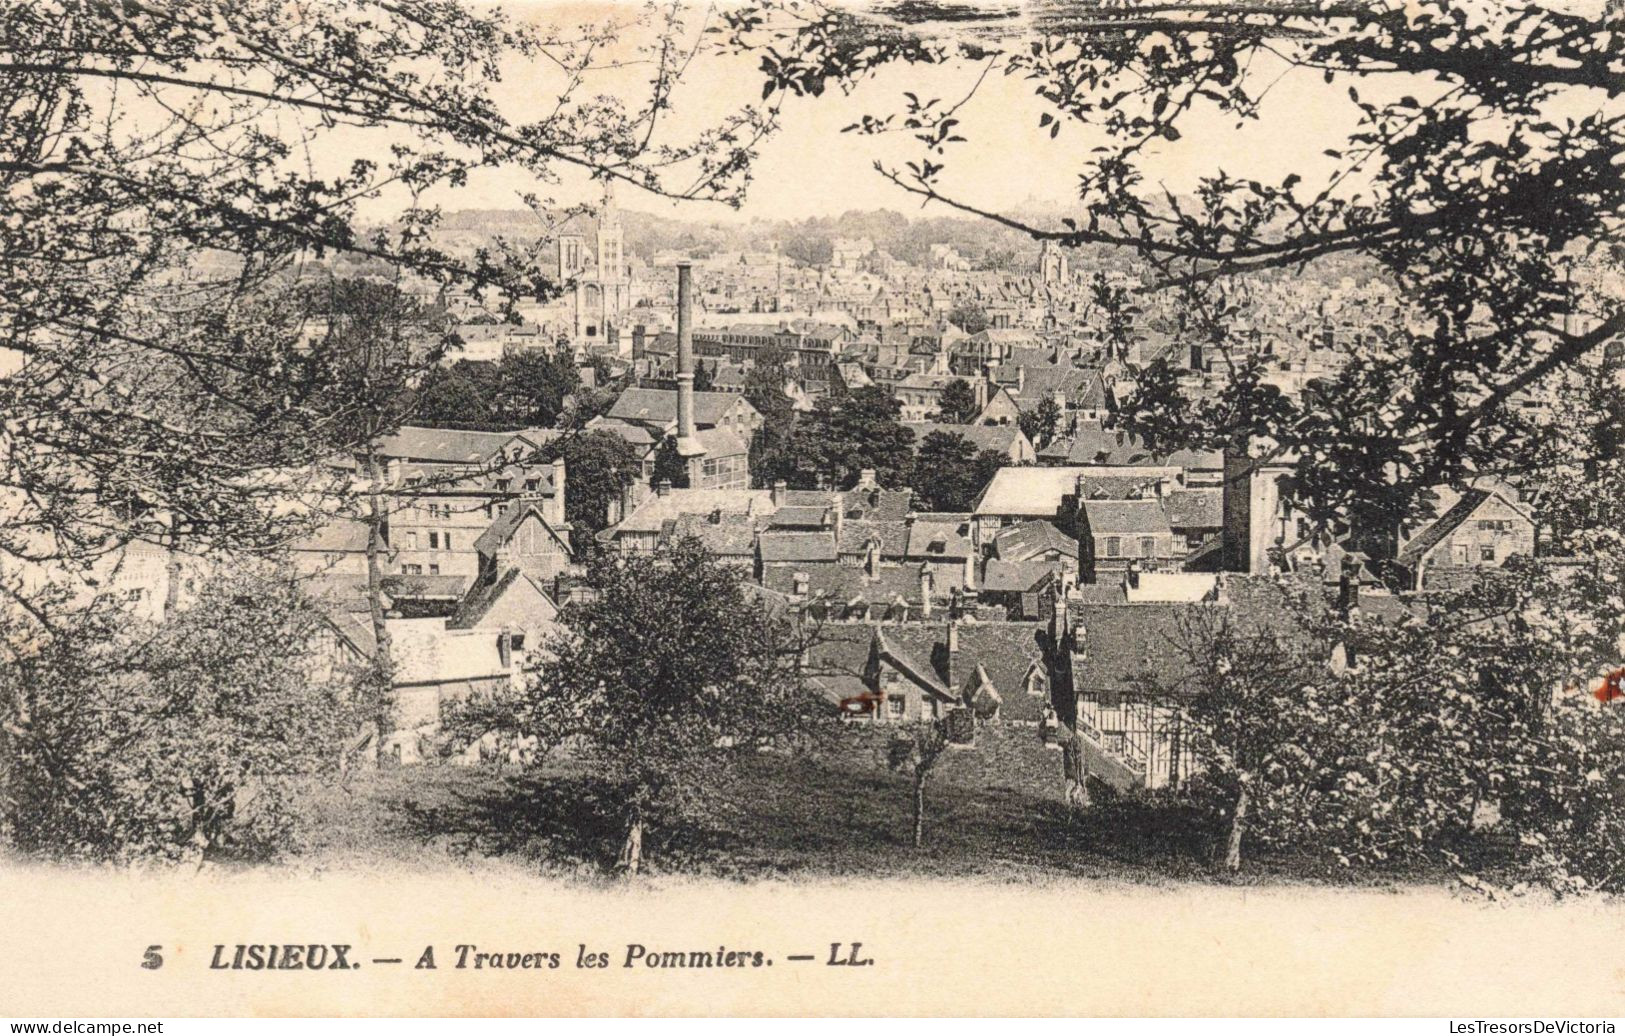 FRANCE - LISIEUX - A Travers Les Pommiers - LL. - Ville - Calvados - Carte Postale Ancienne - Lisieux